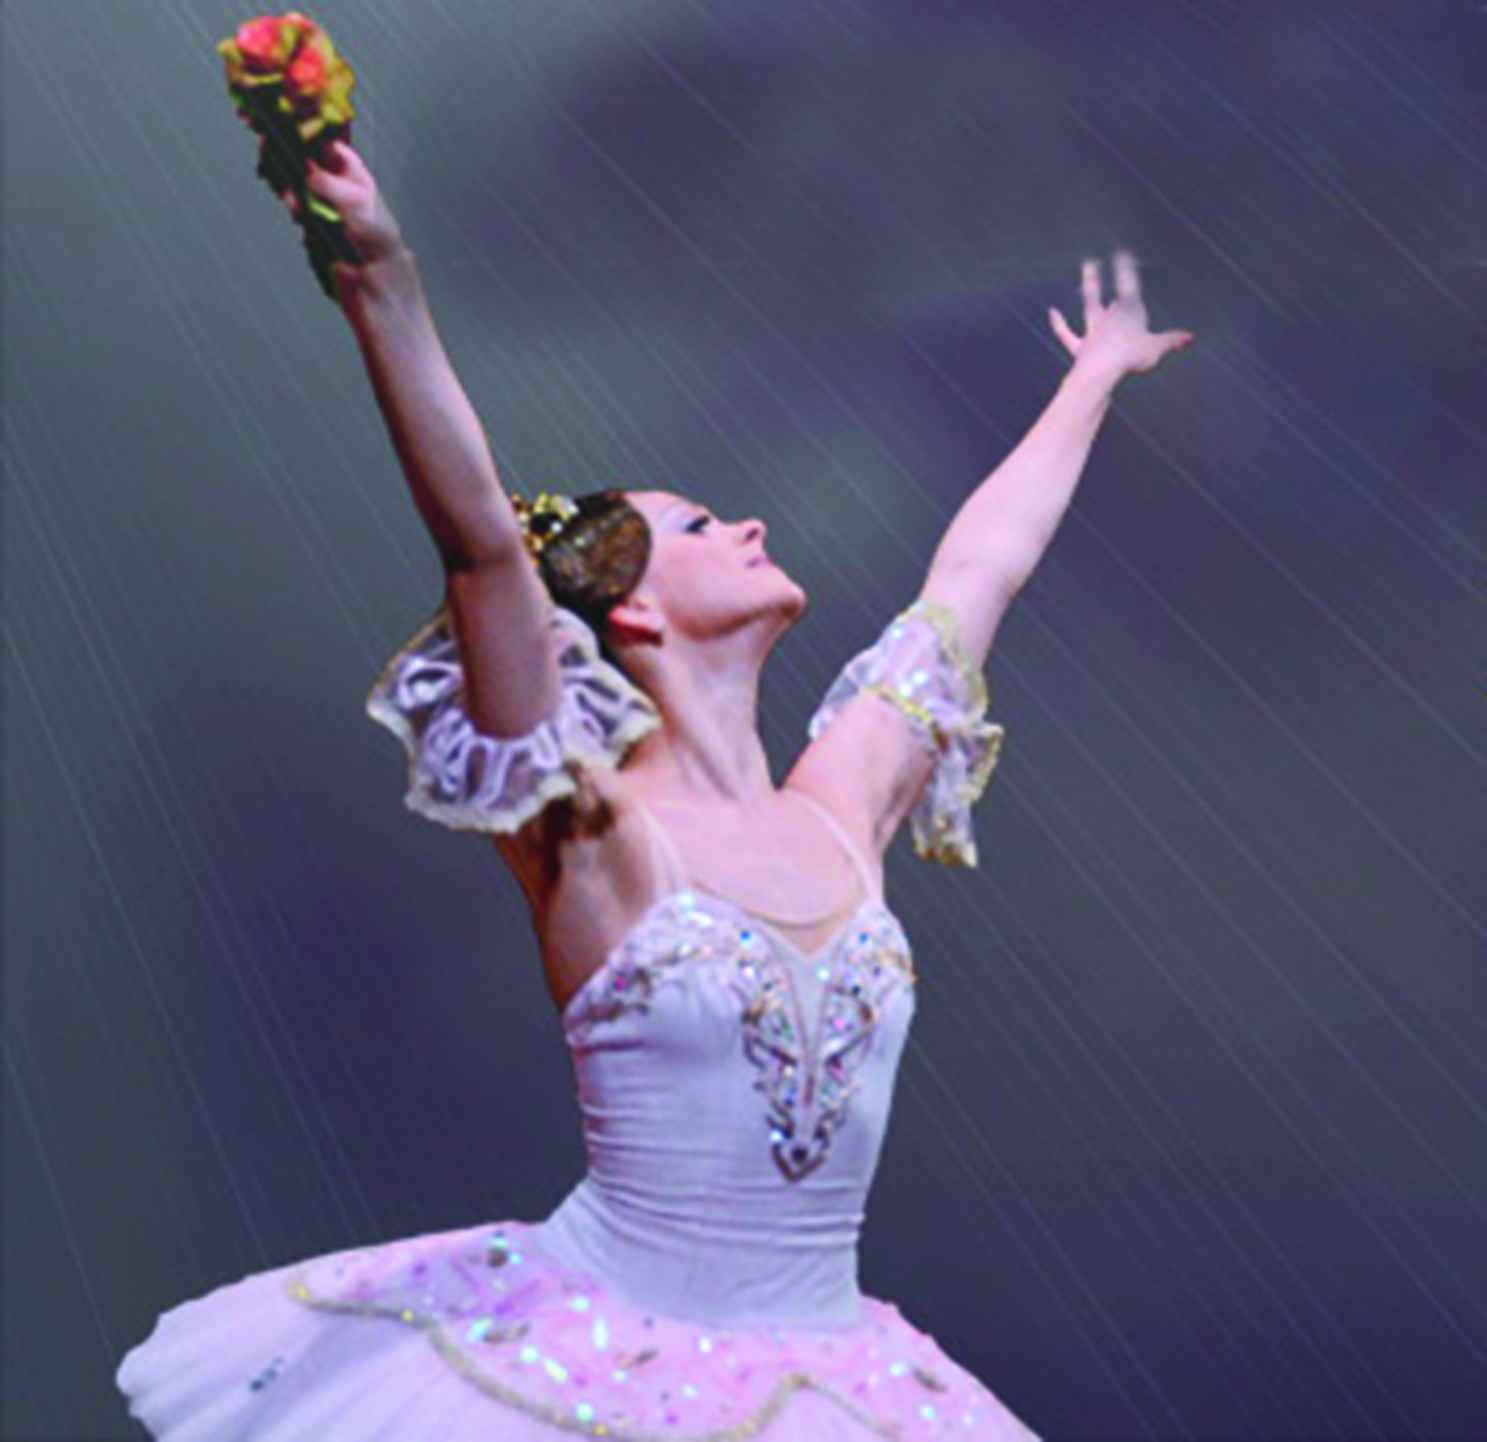 International Ballet Company de Moldavia presenta ‘La bella durmiente’ en el Teatro Romea de Murcia